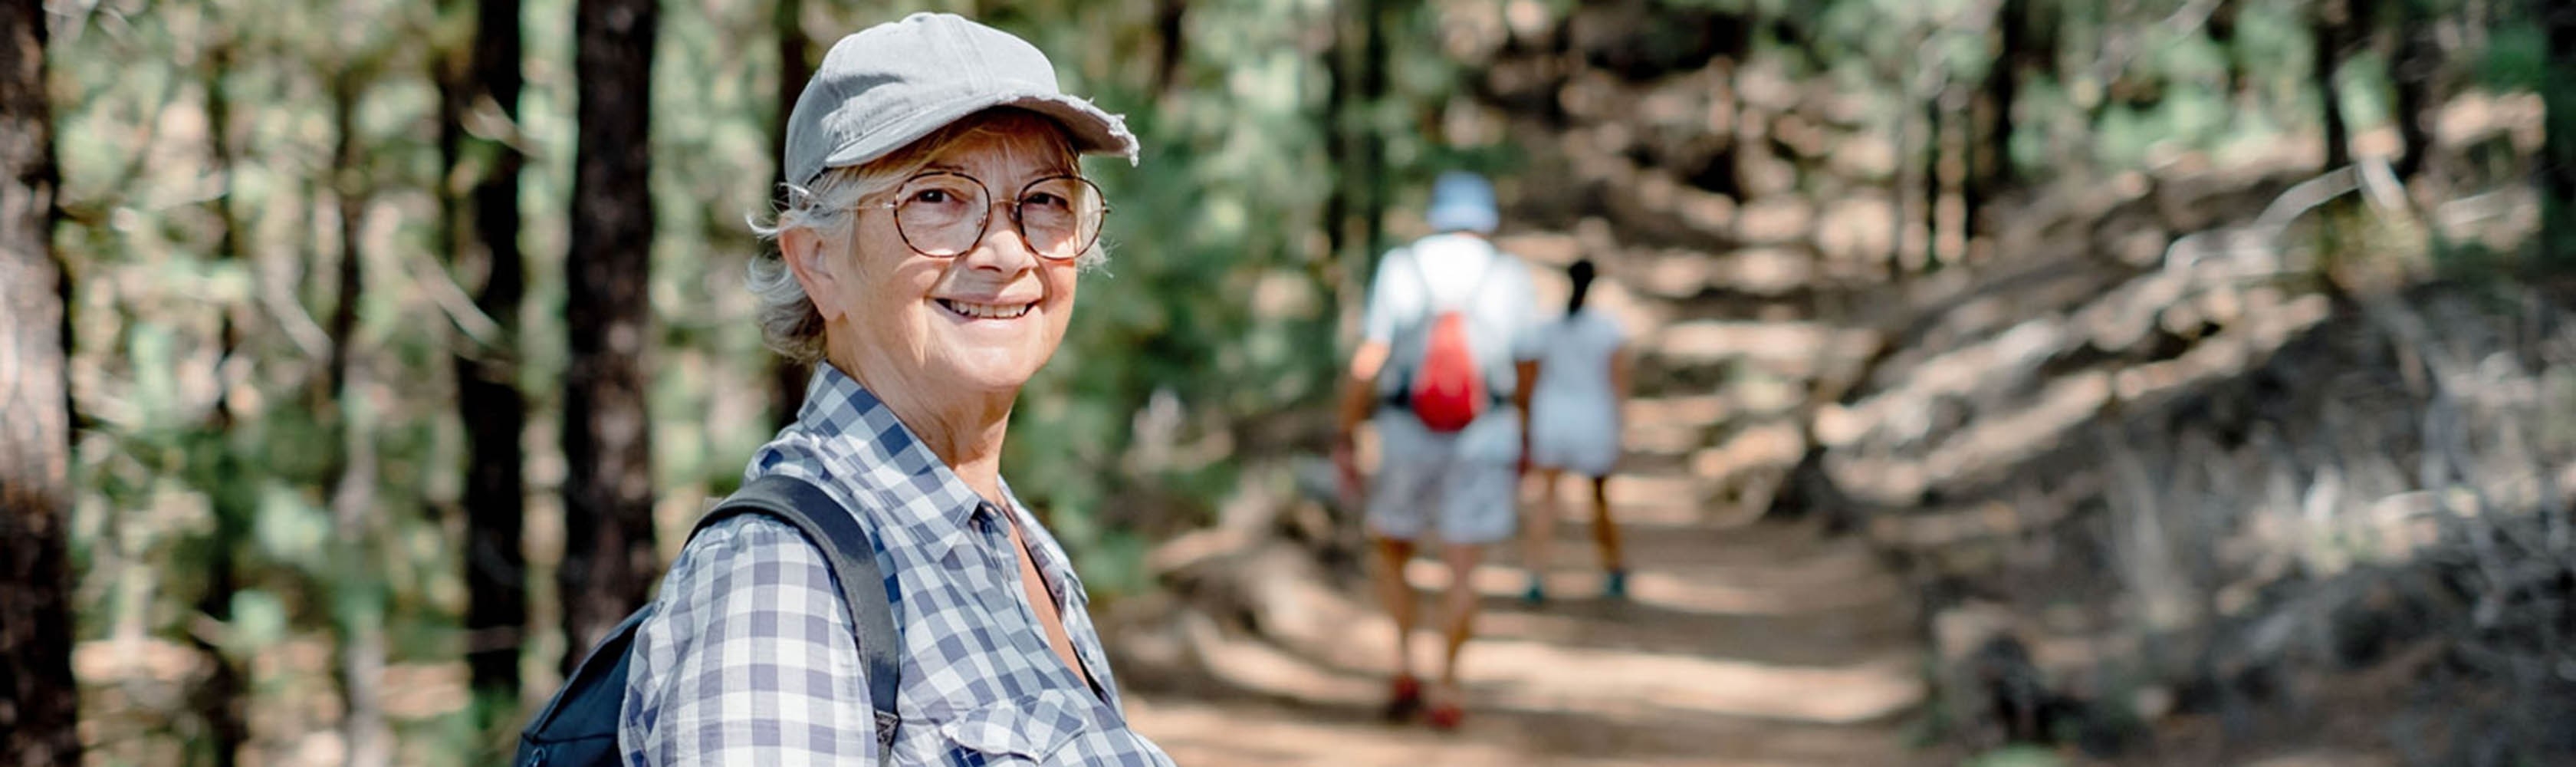 Una donna anziana si gode un'escursione con gli amici nella foresta